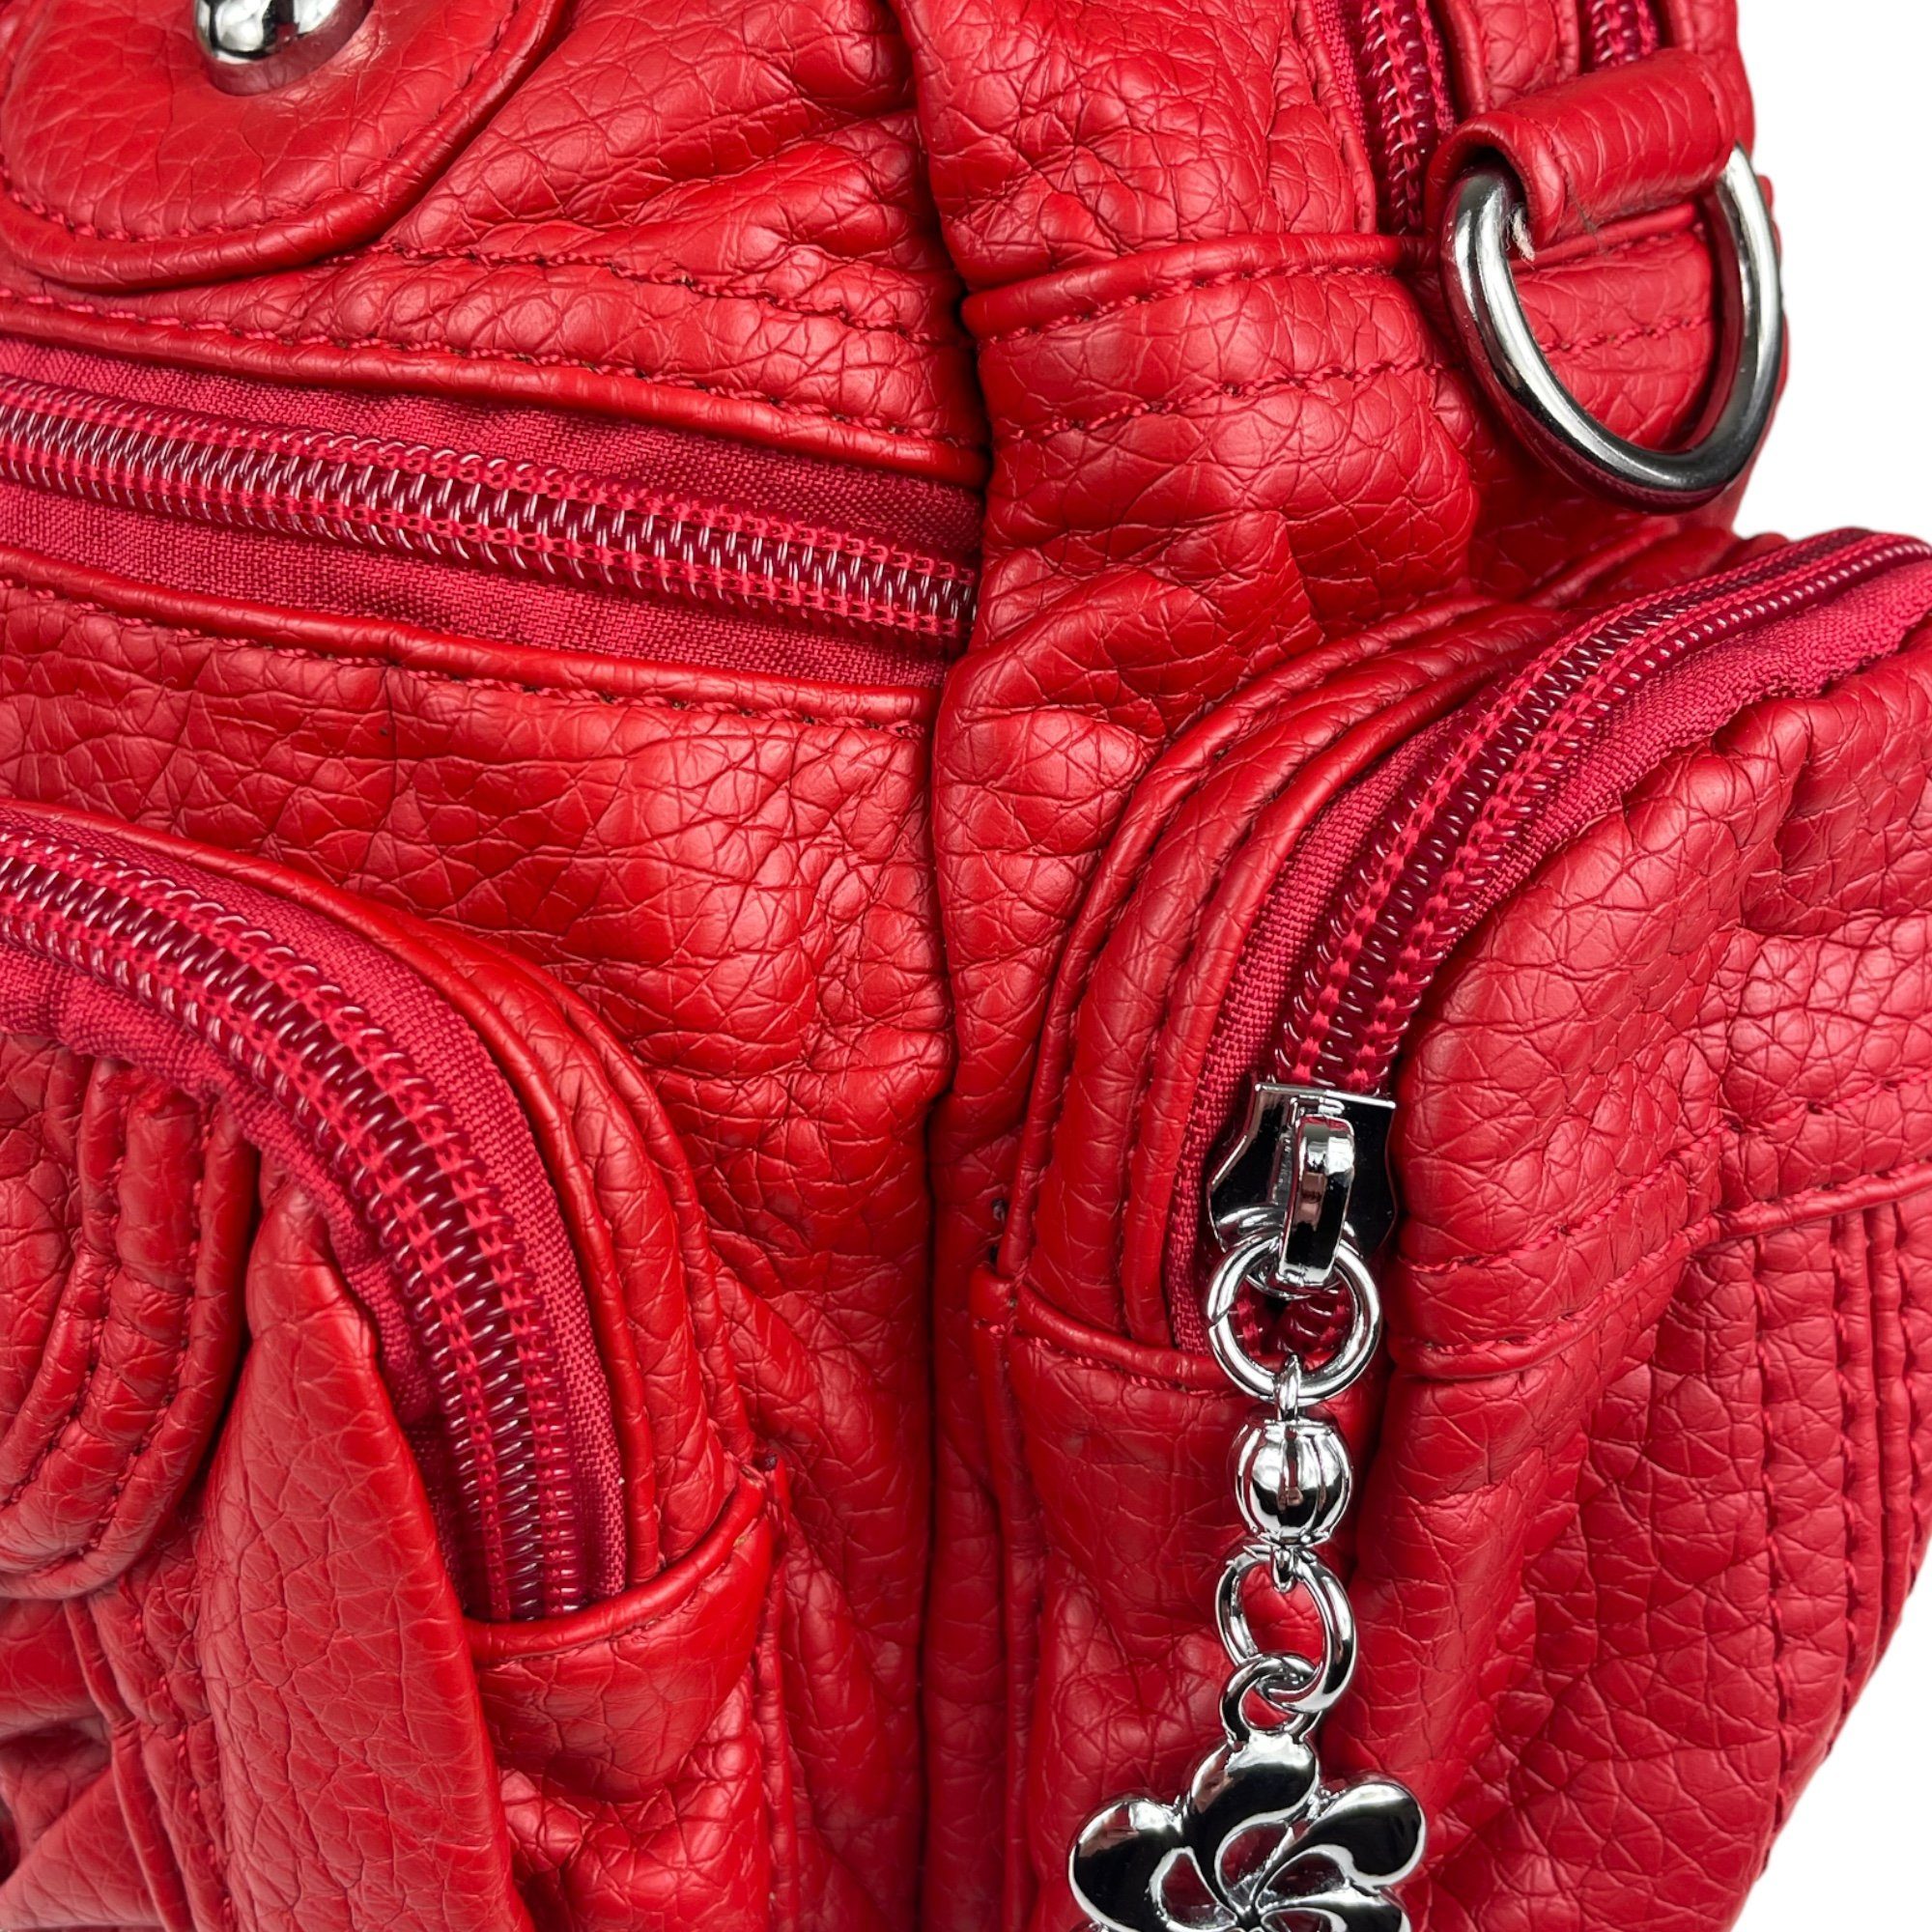 rot (Schultertasche) mit Fächer, viele Schulterriemen abnehmbarer Taschen4life verstellbarer klassische Schultertasche Damen Handtasche Nieten AKW22032,